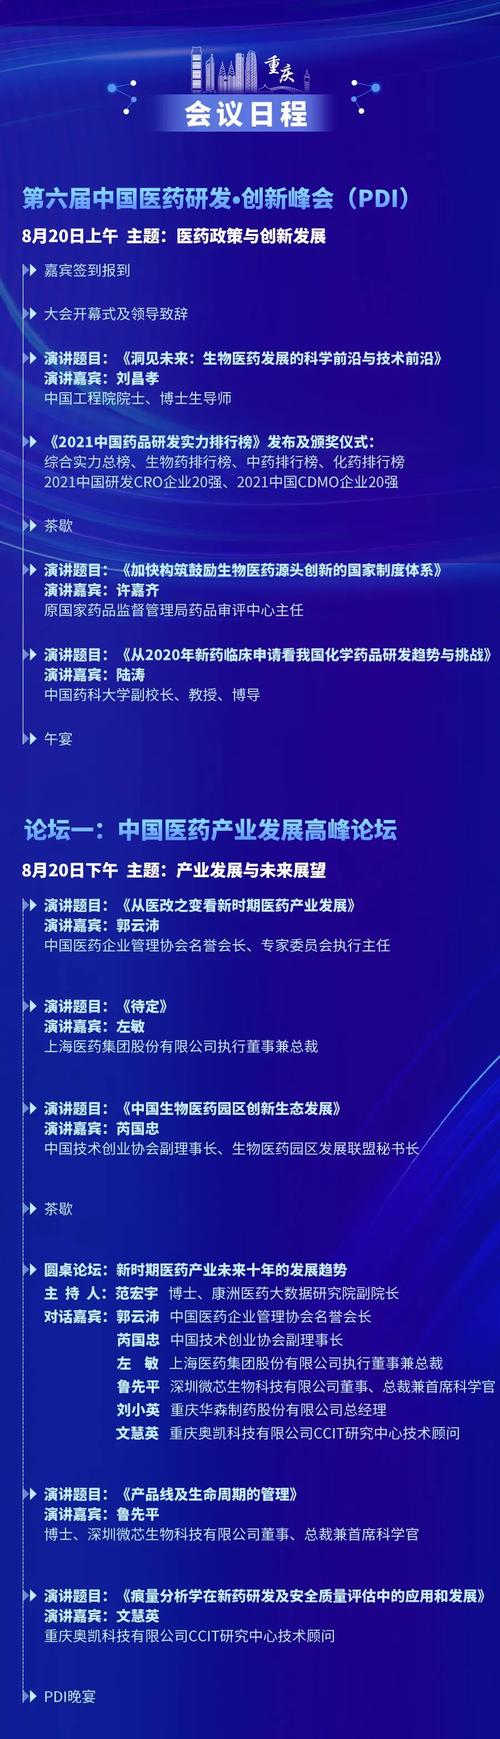 即将发布指导单位 |中国农工党中央生物技术与药学工作委员会,中国药